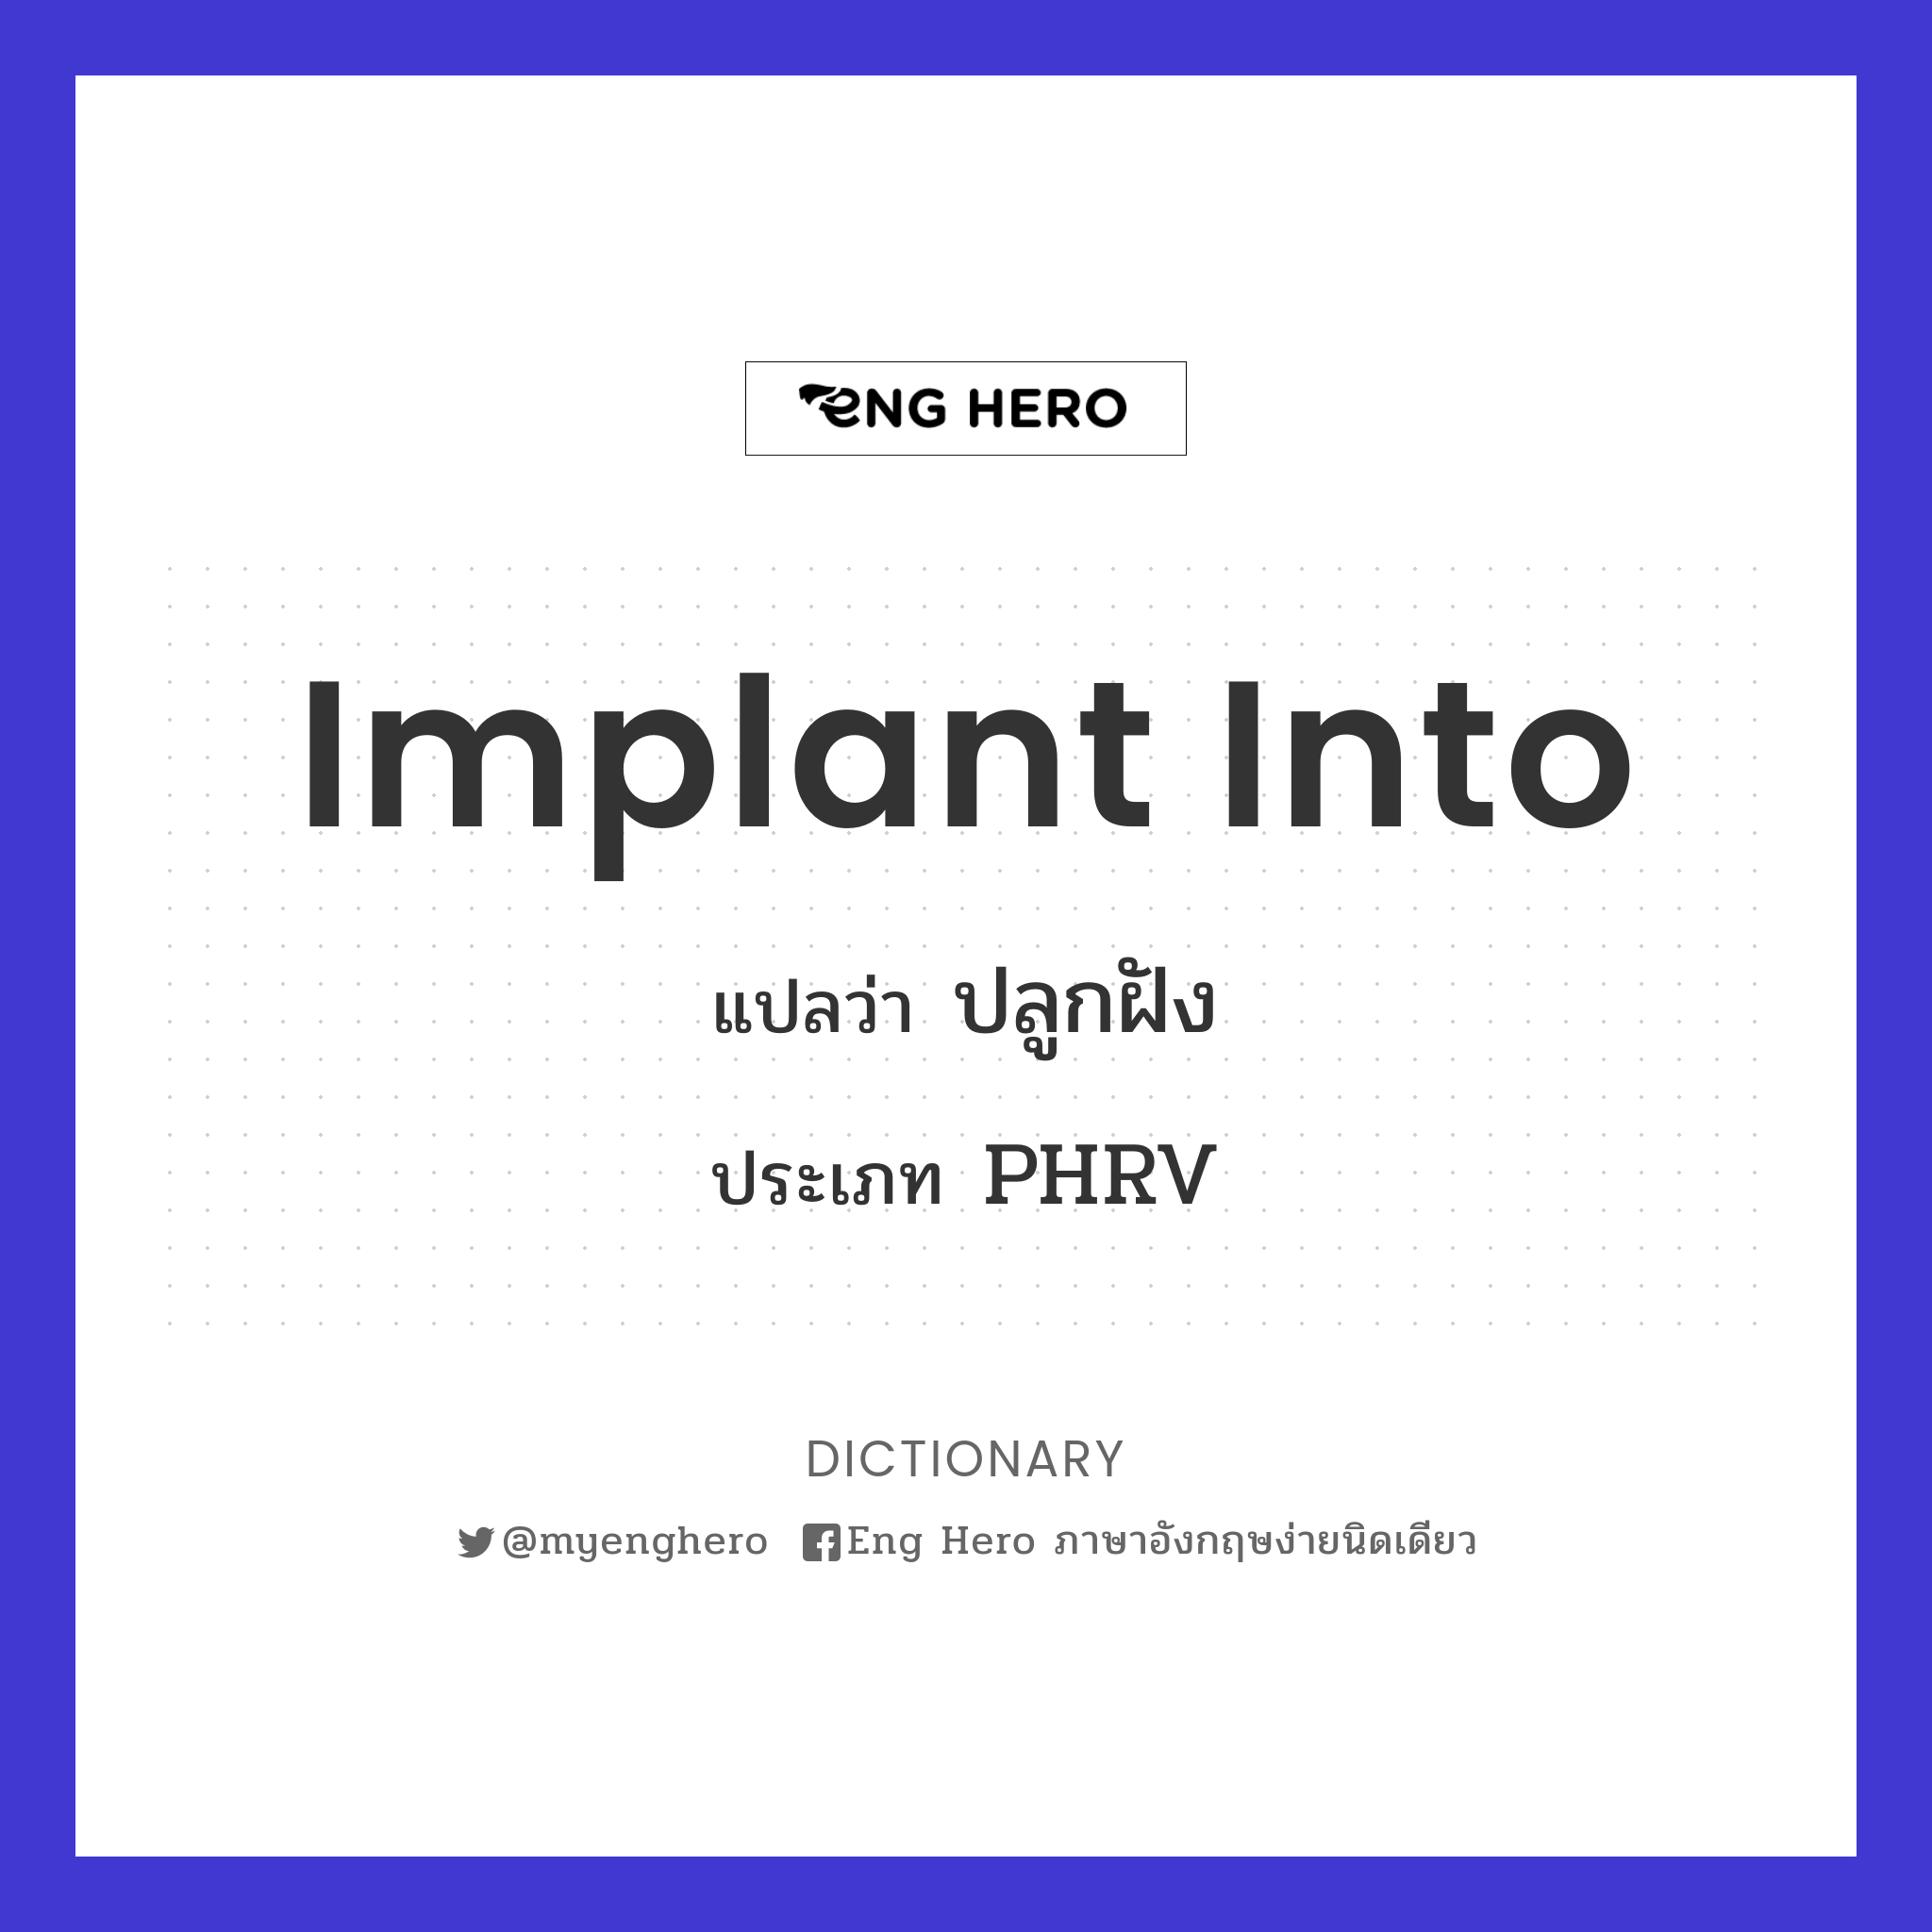 implant into